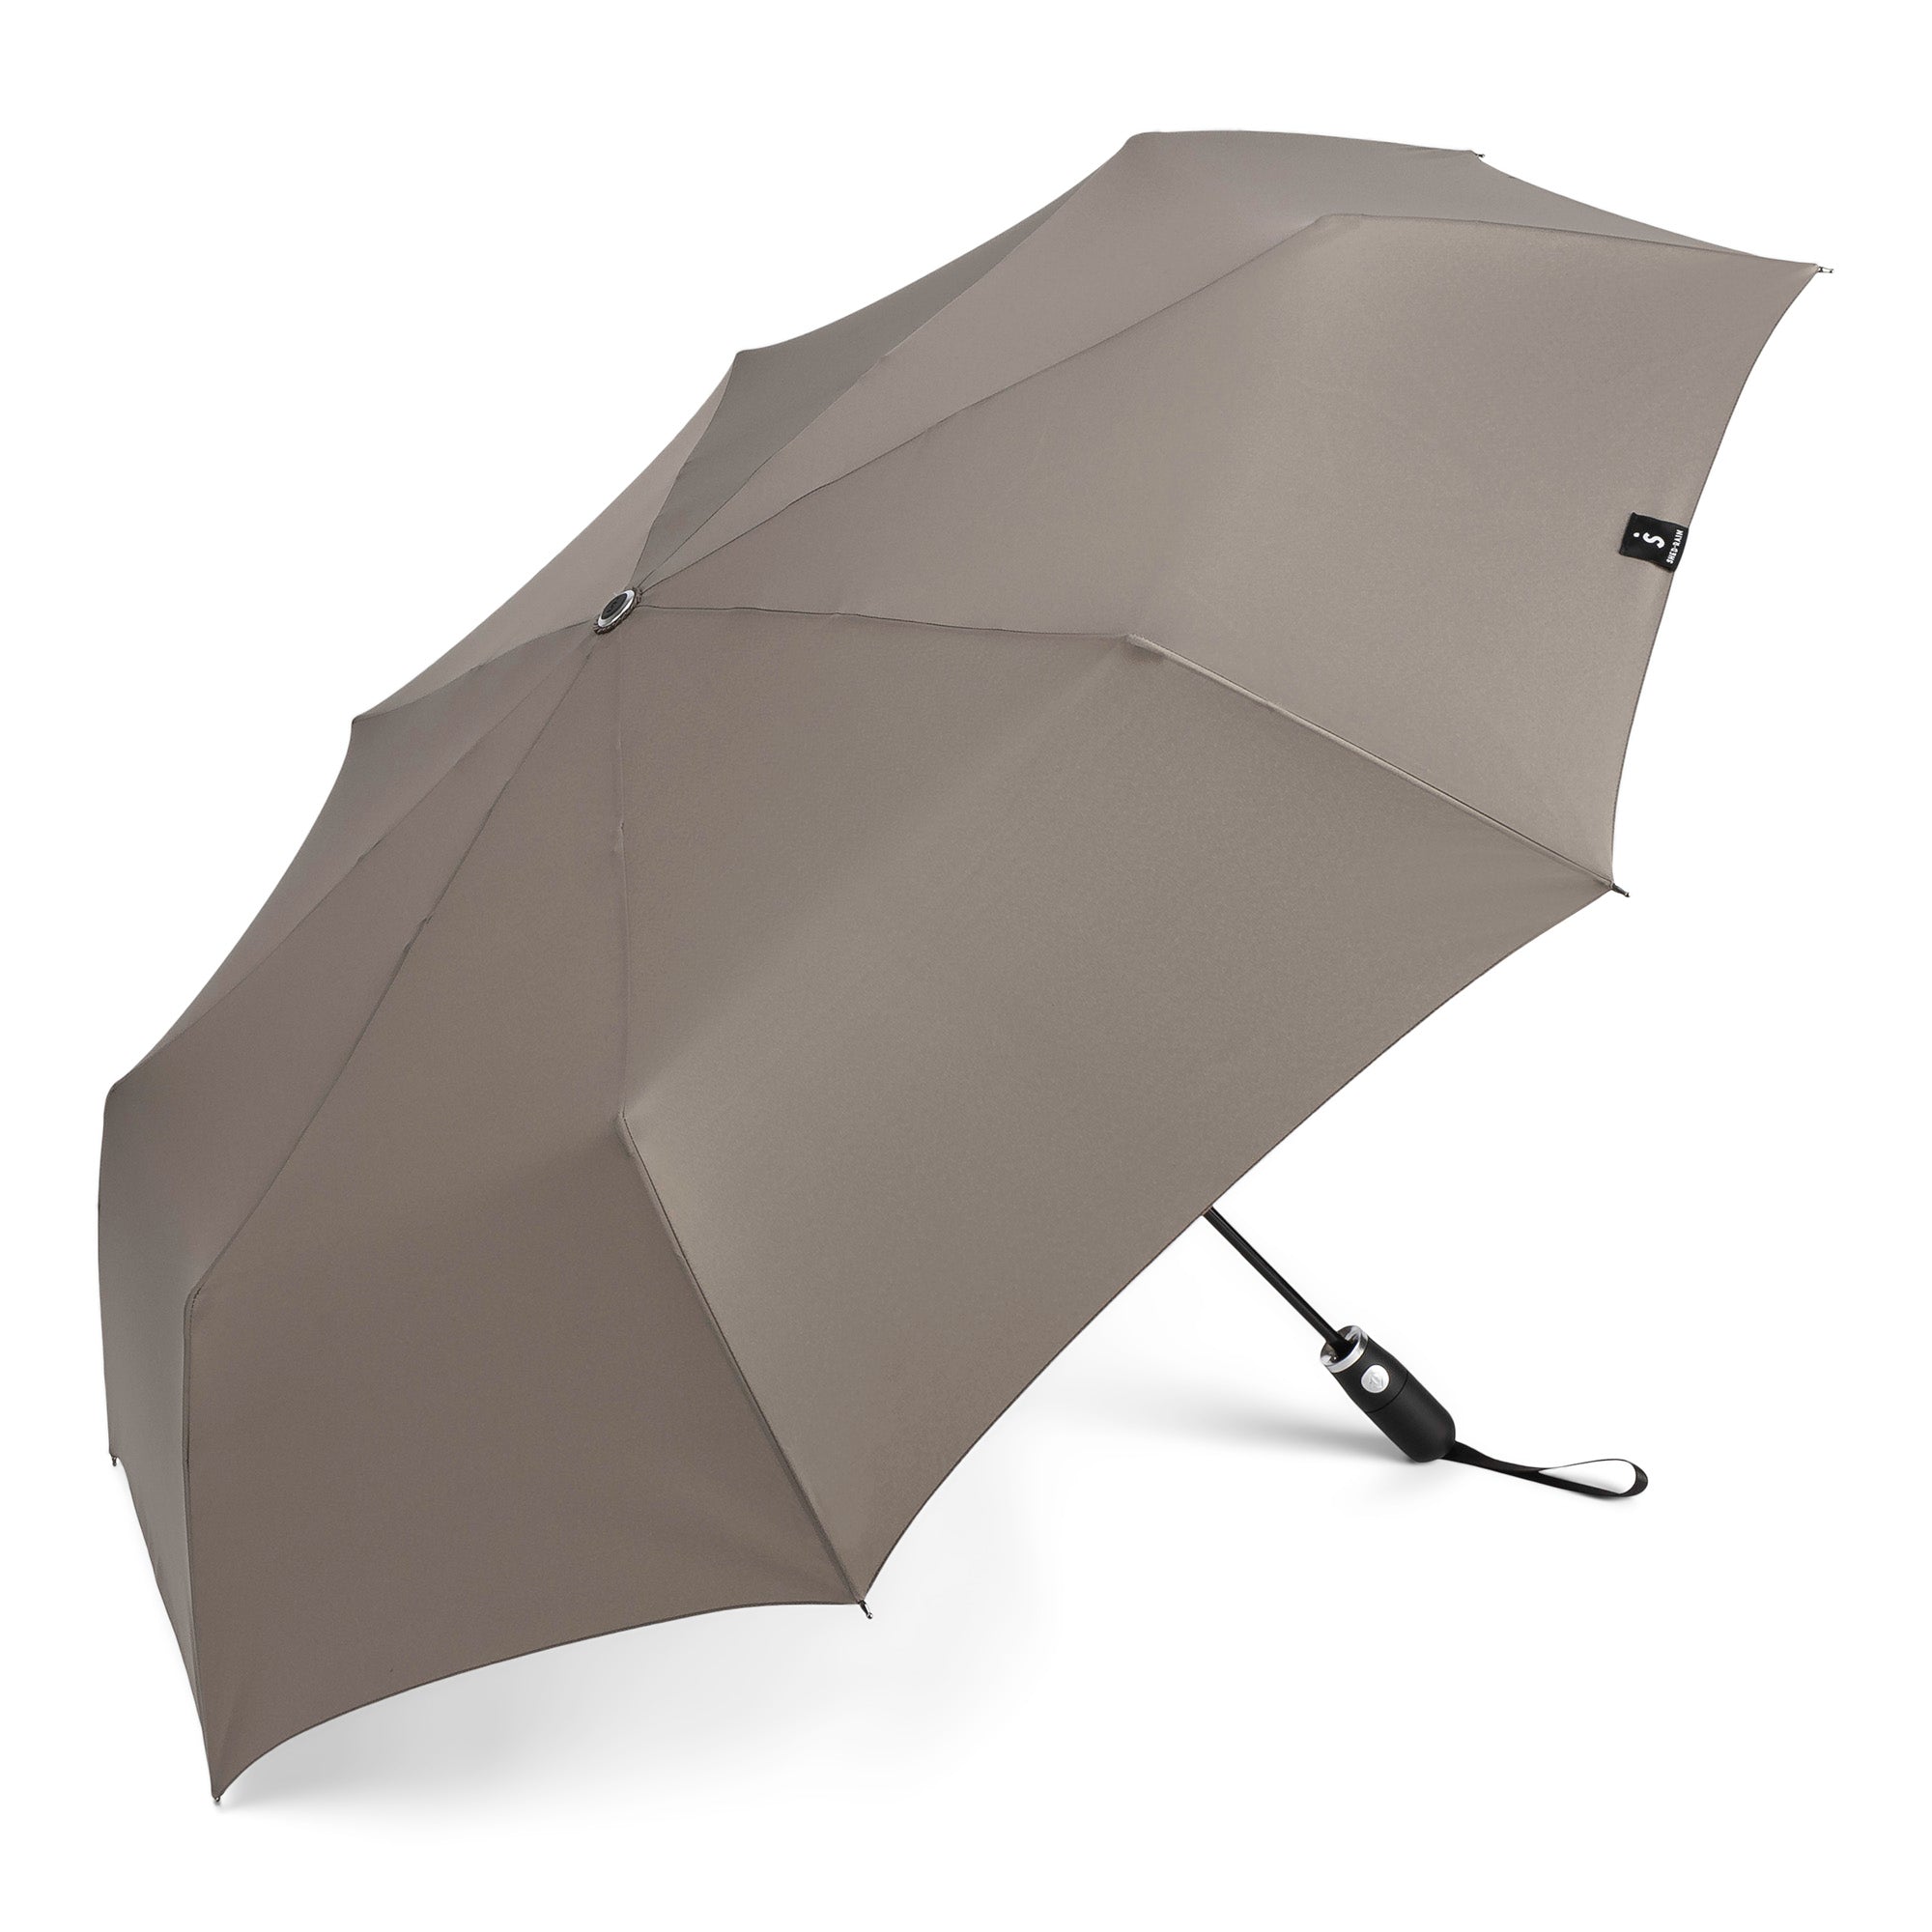 Auto Open Auto Close Jumbo Compact Umbrella in Hearth (grey-tan) - 2469